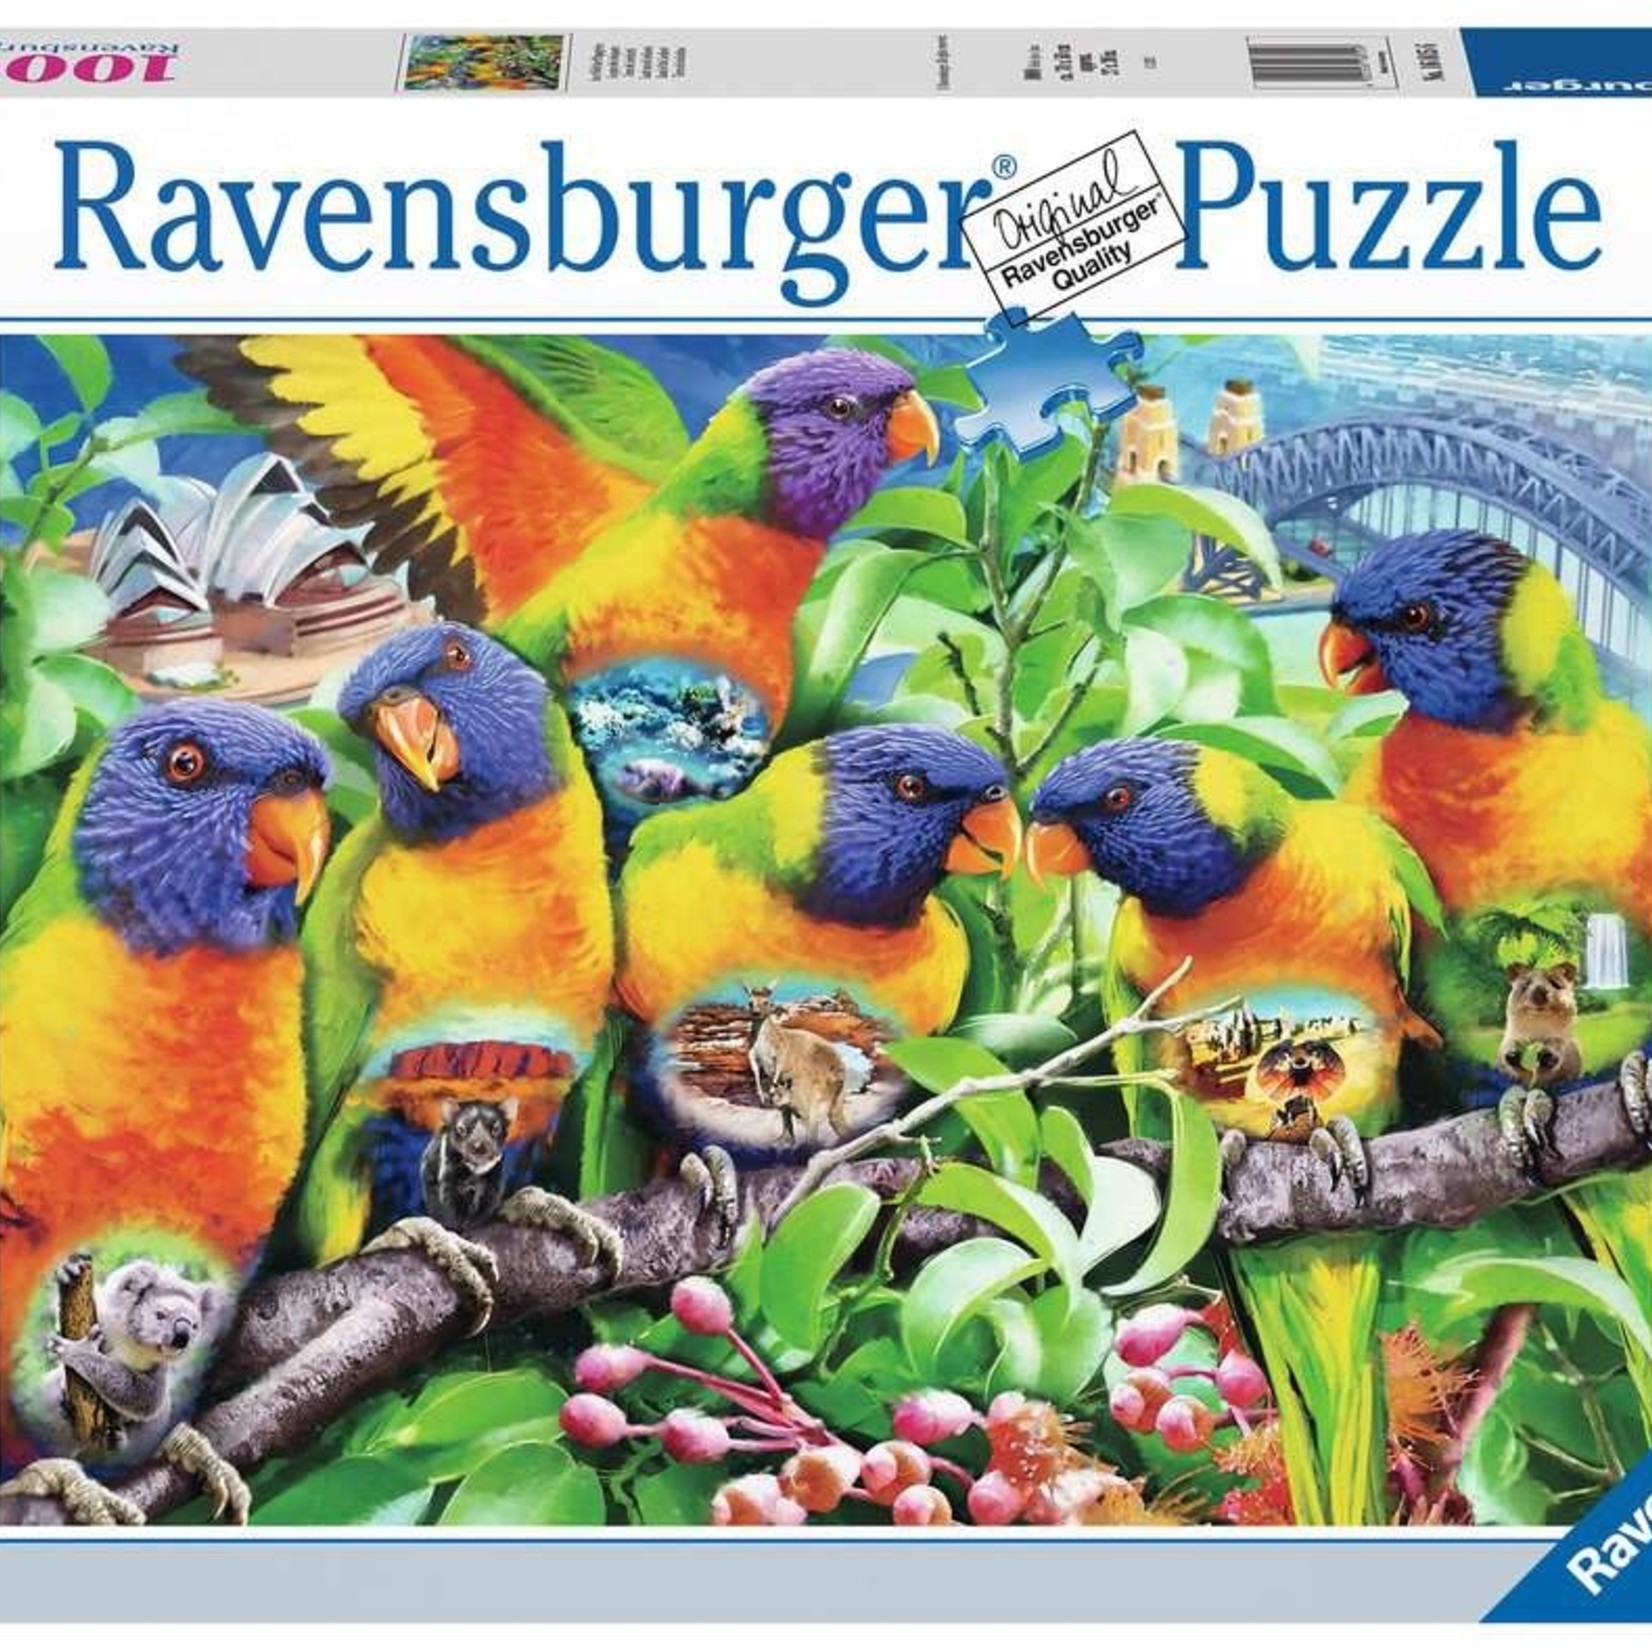 Ravensburger Ravensburger 1000 - Le pays des loriquets